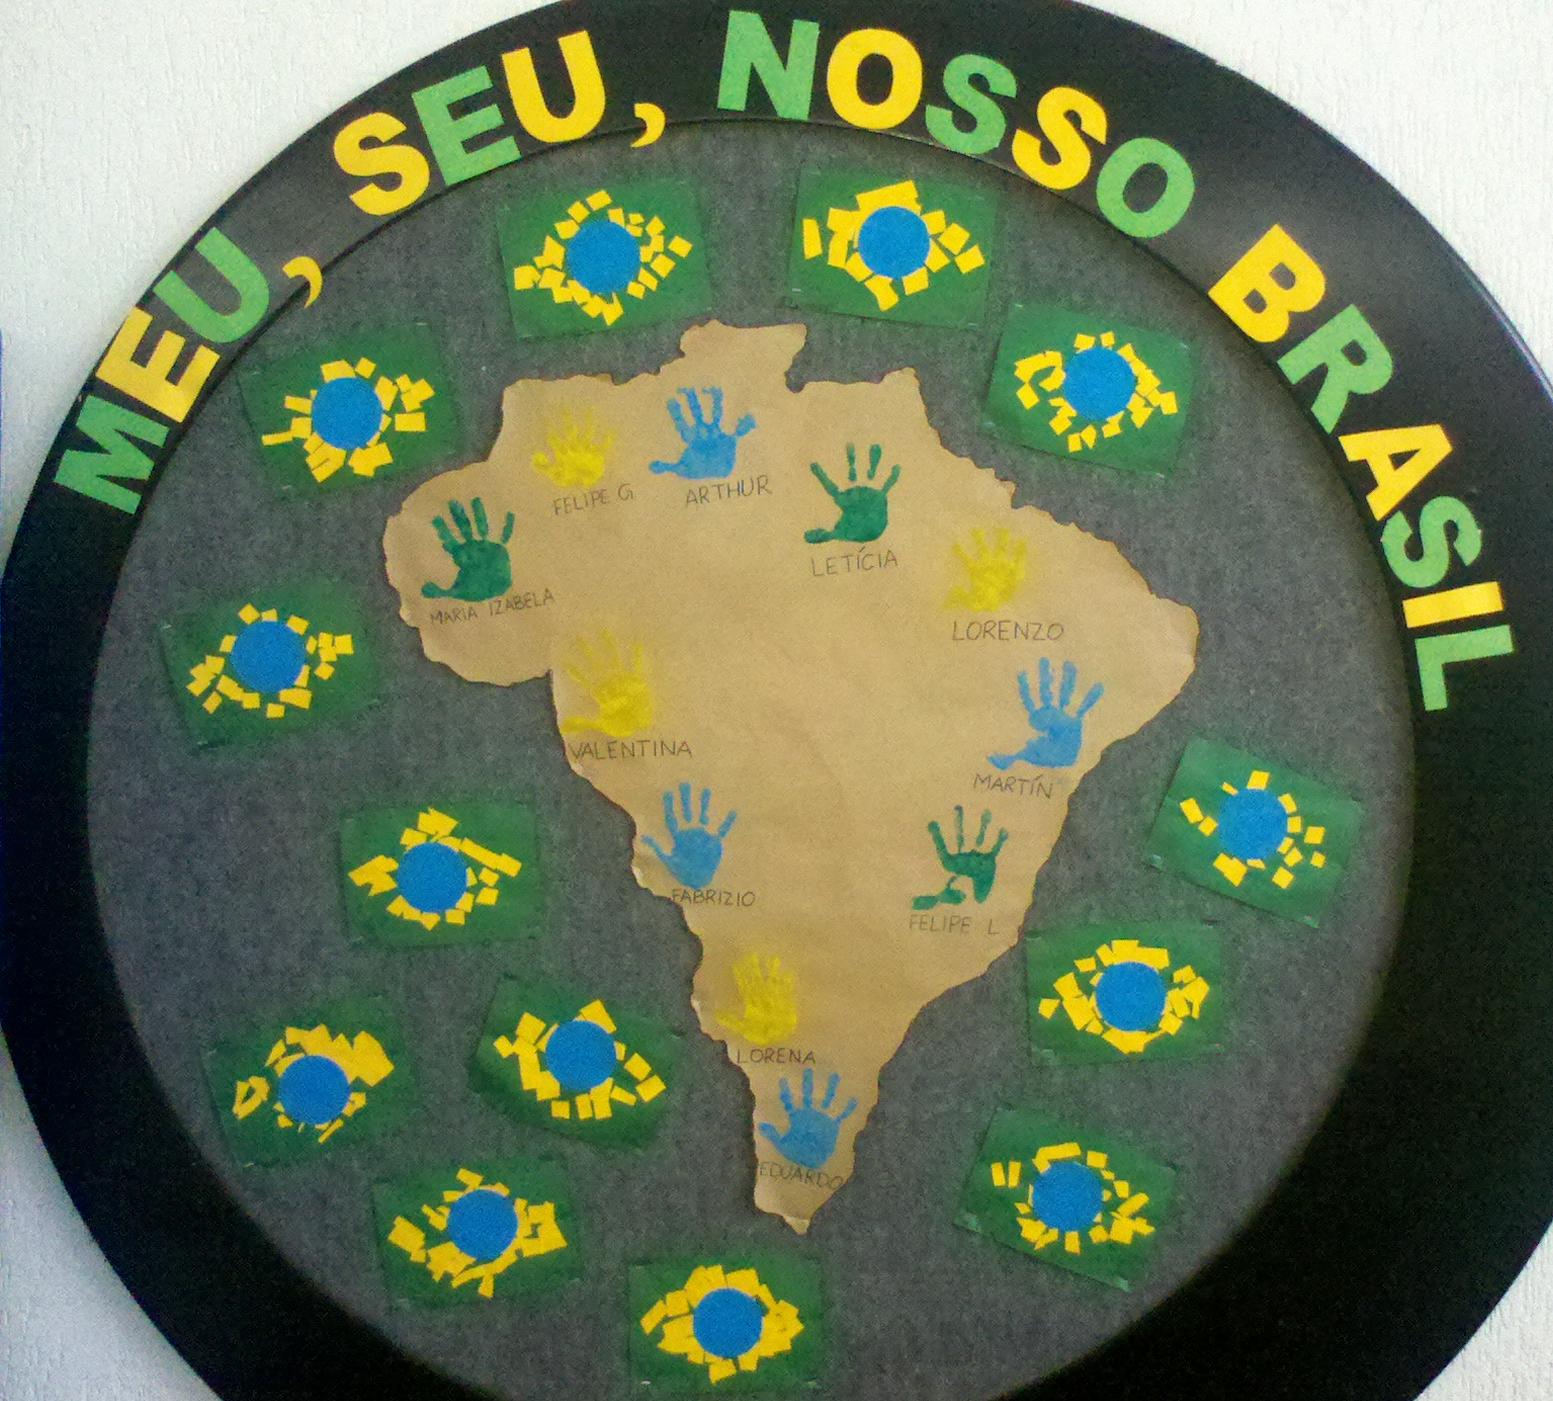 Ideias de painéis para o Dia da Independência do Brasil.